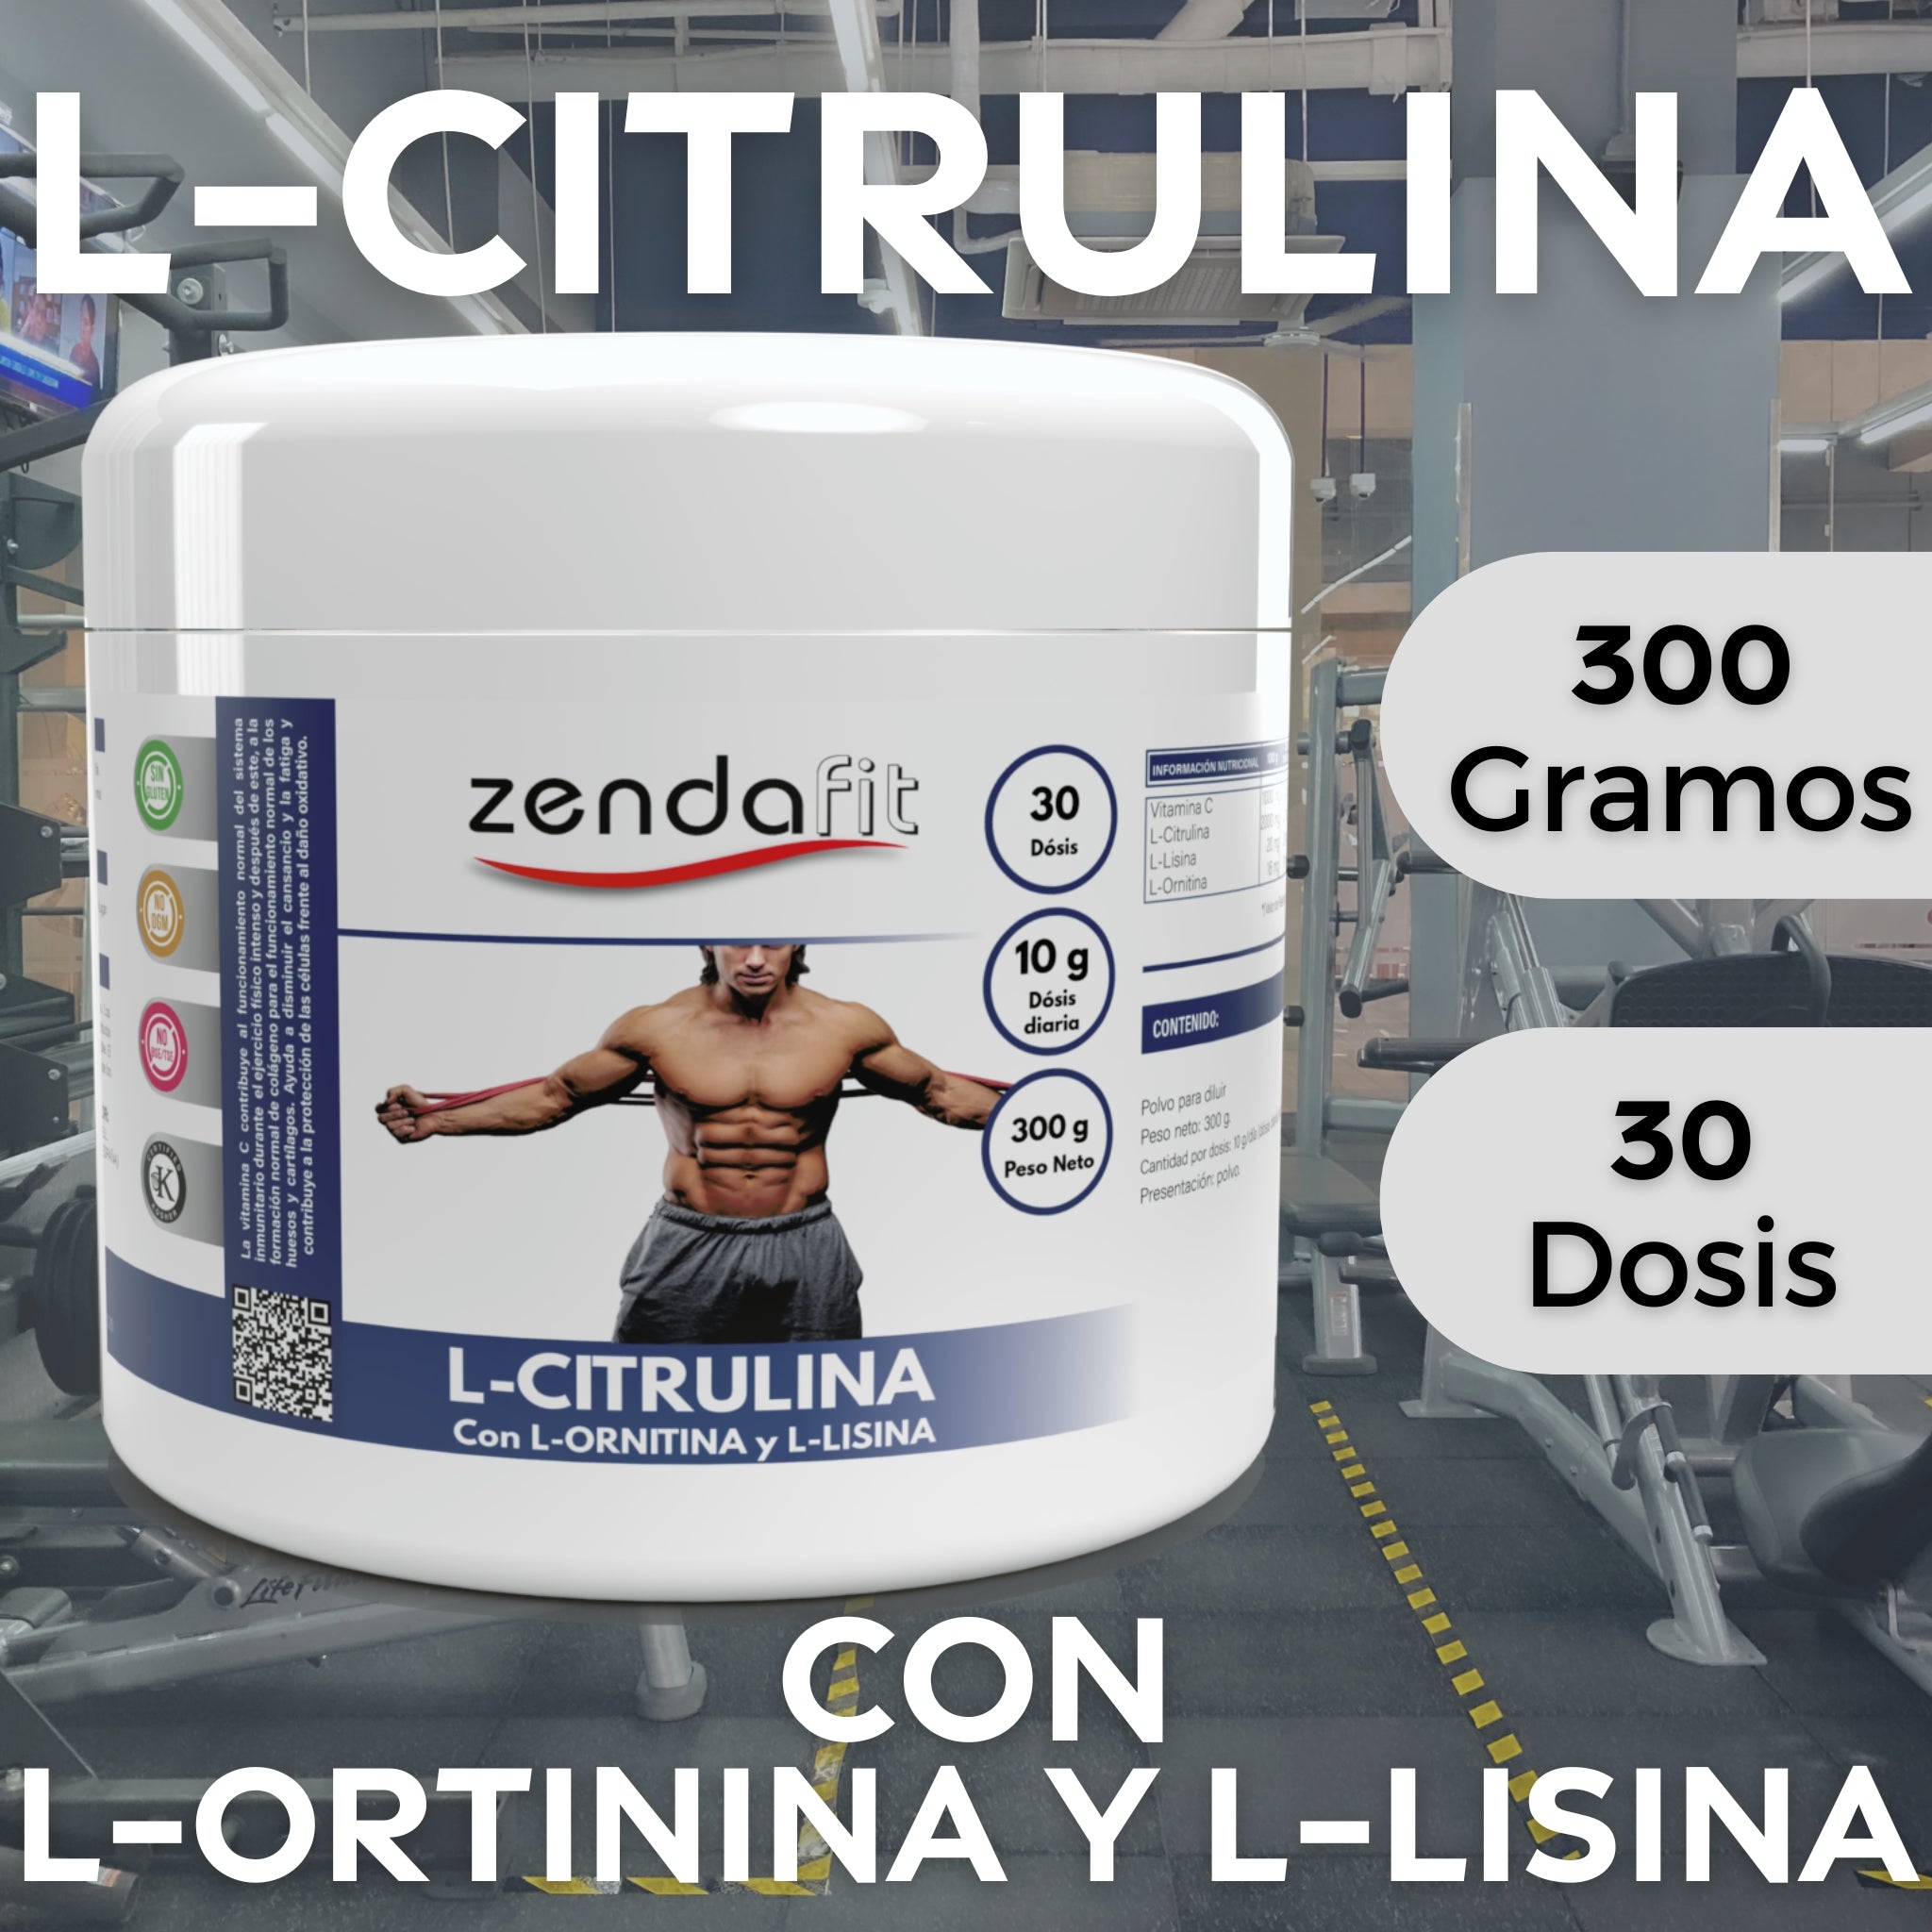 L-Citrulina, L-Ornitina, L-Lisina